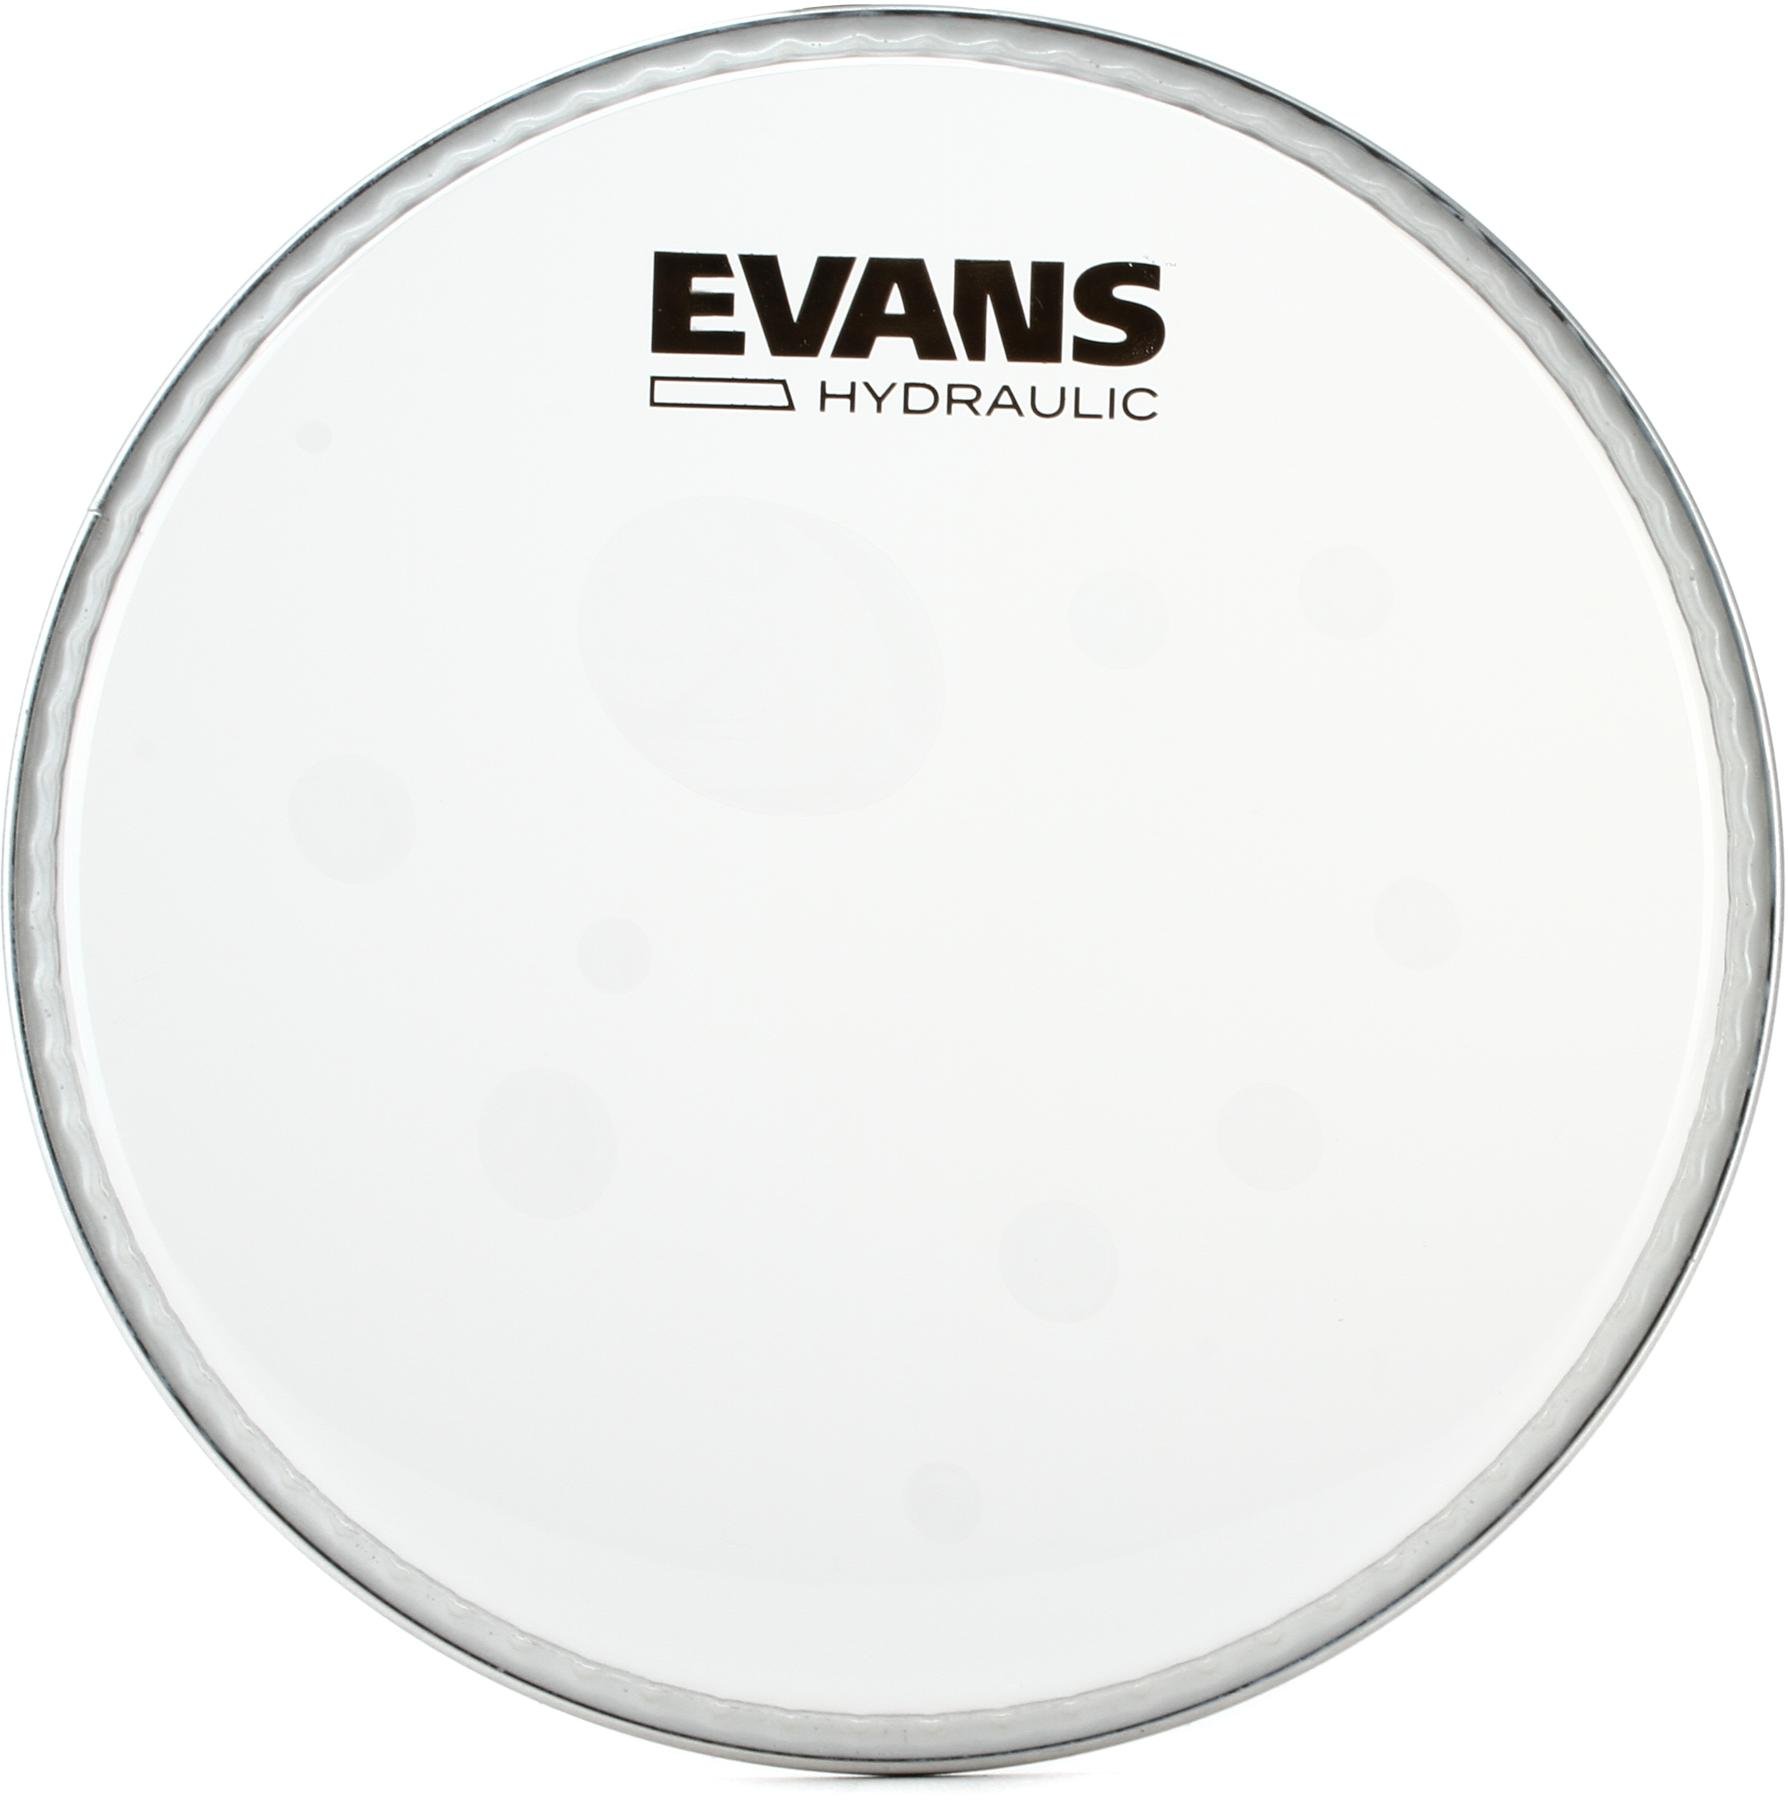 evans hydraulic glass drum heads